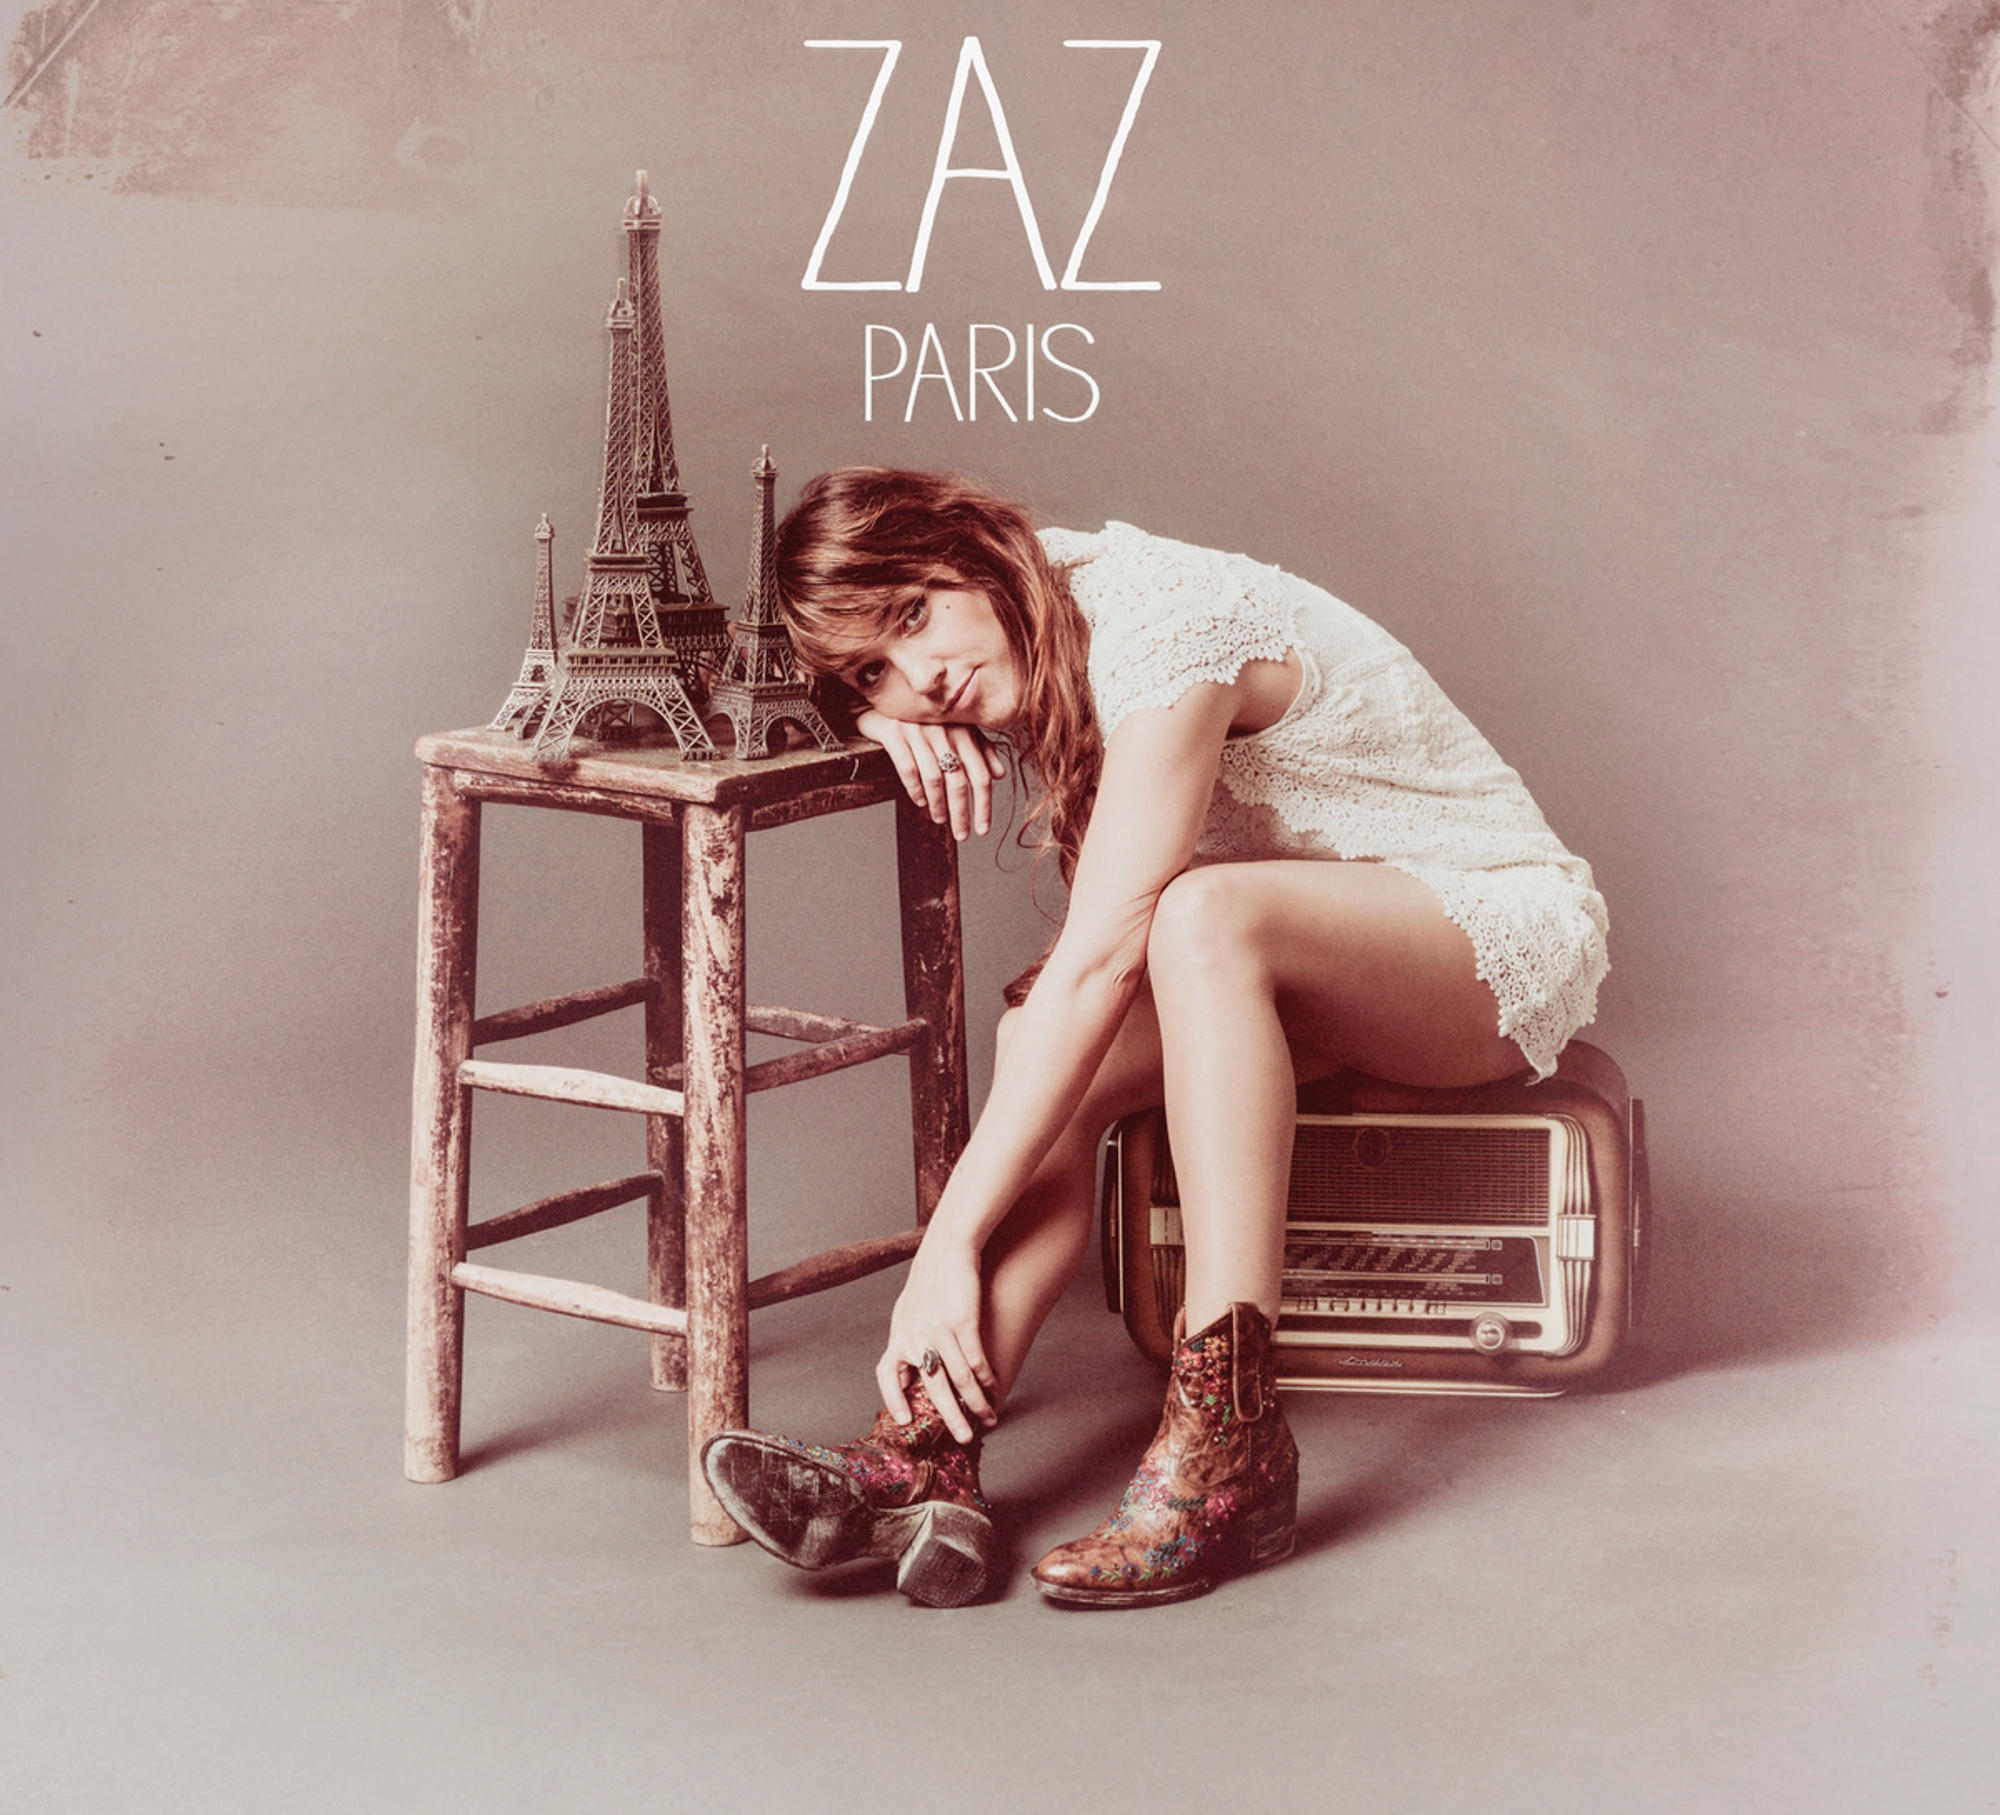 (CD) - Zaz - Paris